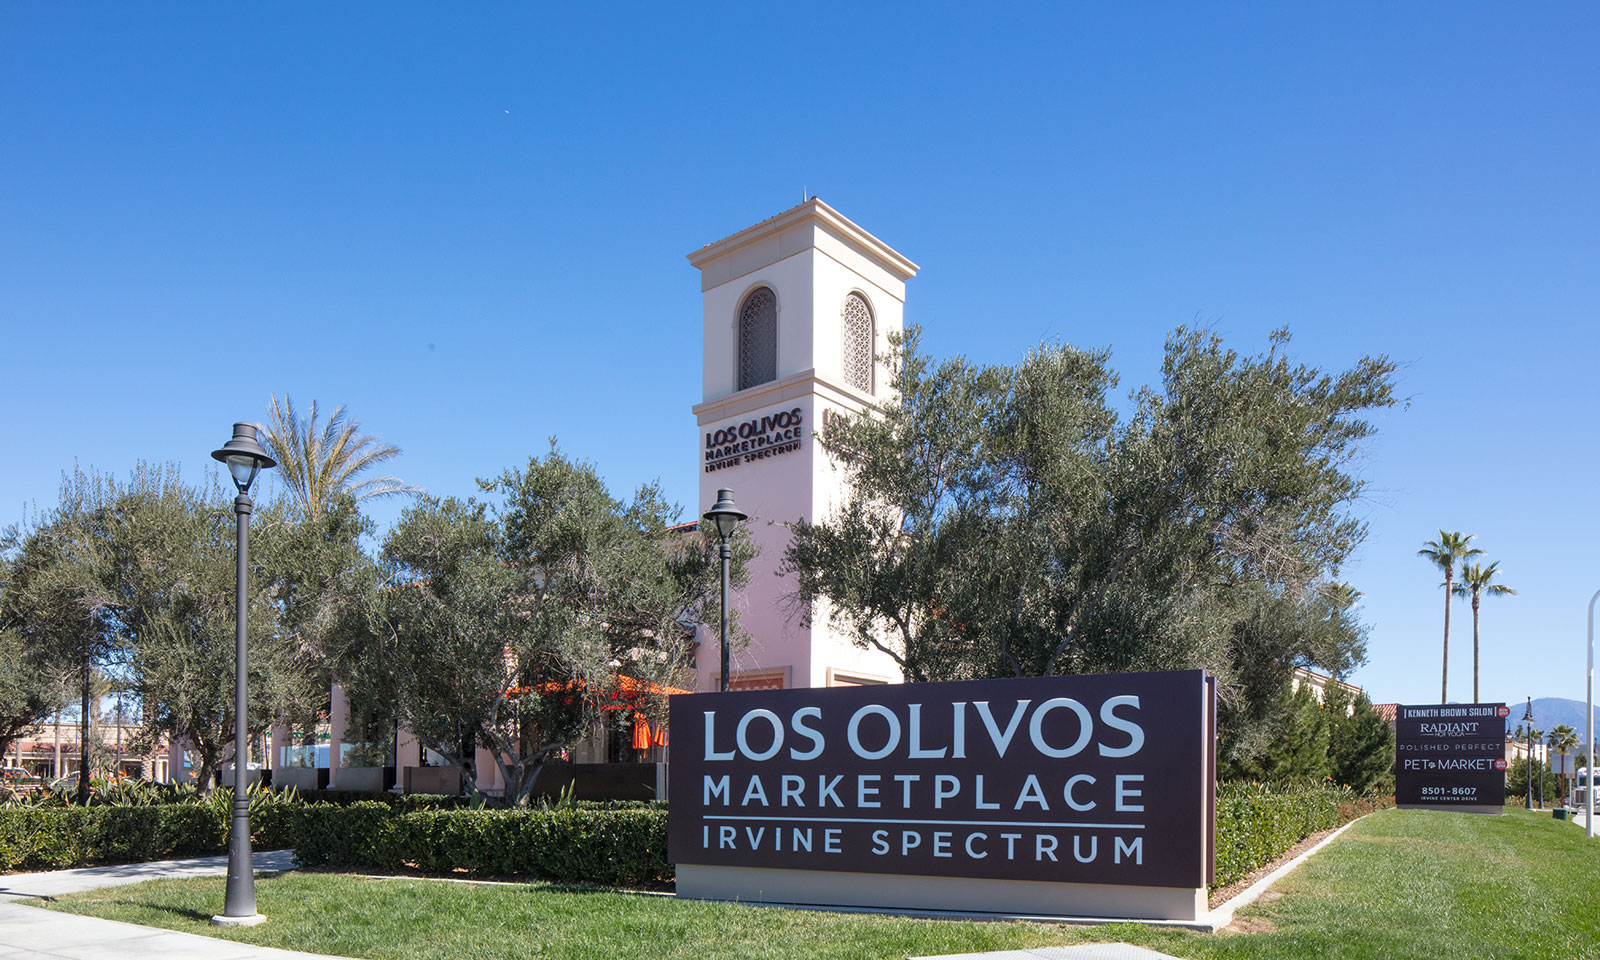 Los Olivos is ‘it’ for foodies